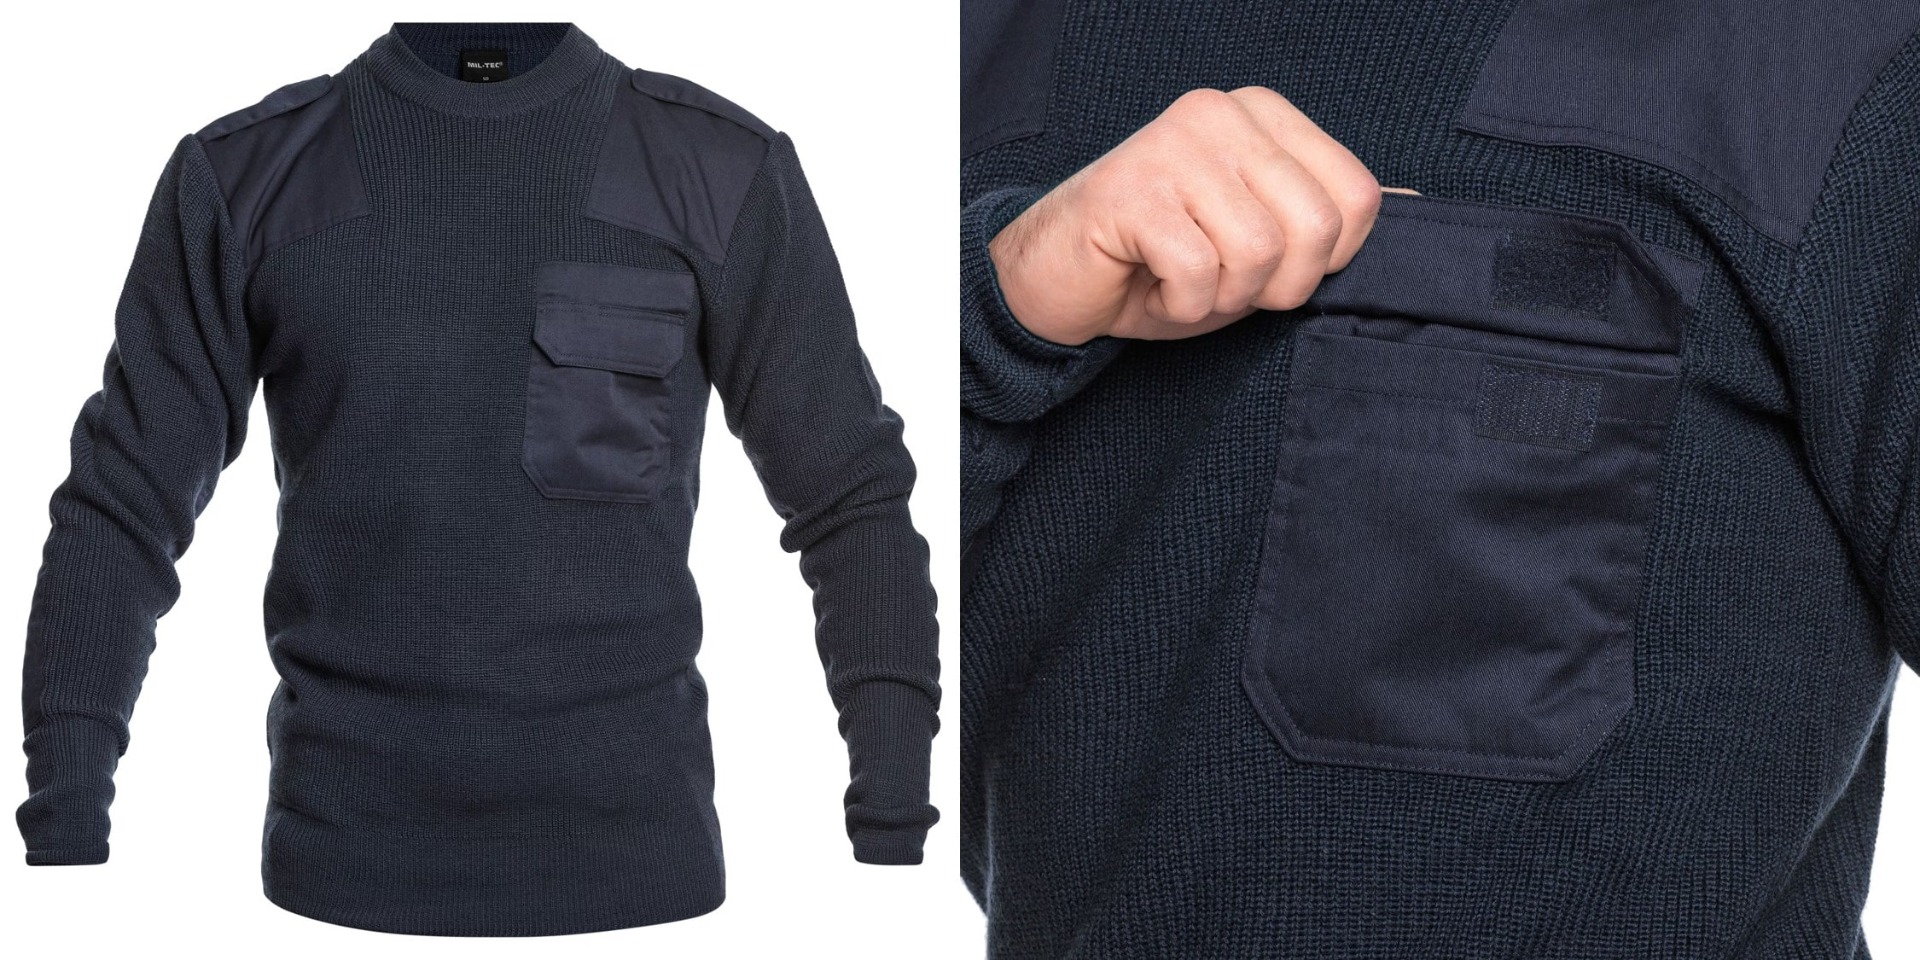 Naročite si kakovosten vojaški volneni pulover nemške vojske BW Bundeswehr na Opremljen.si. Udobje, stil in trpežnost združeni v enem oblačilu. Izberite vojaški trend že danes!